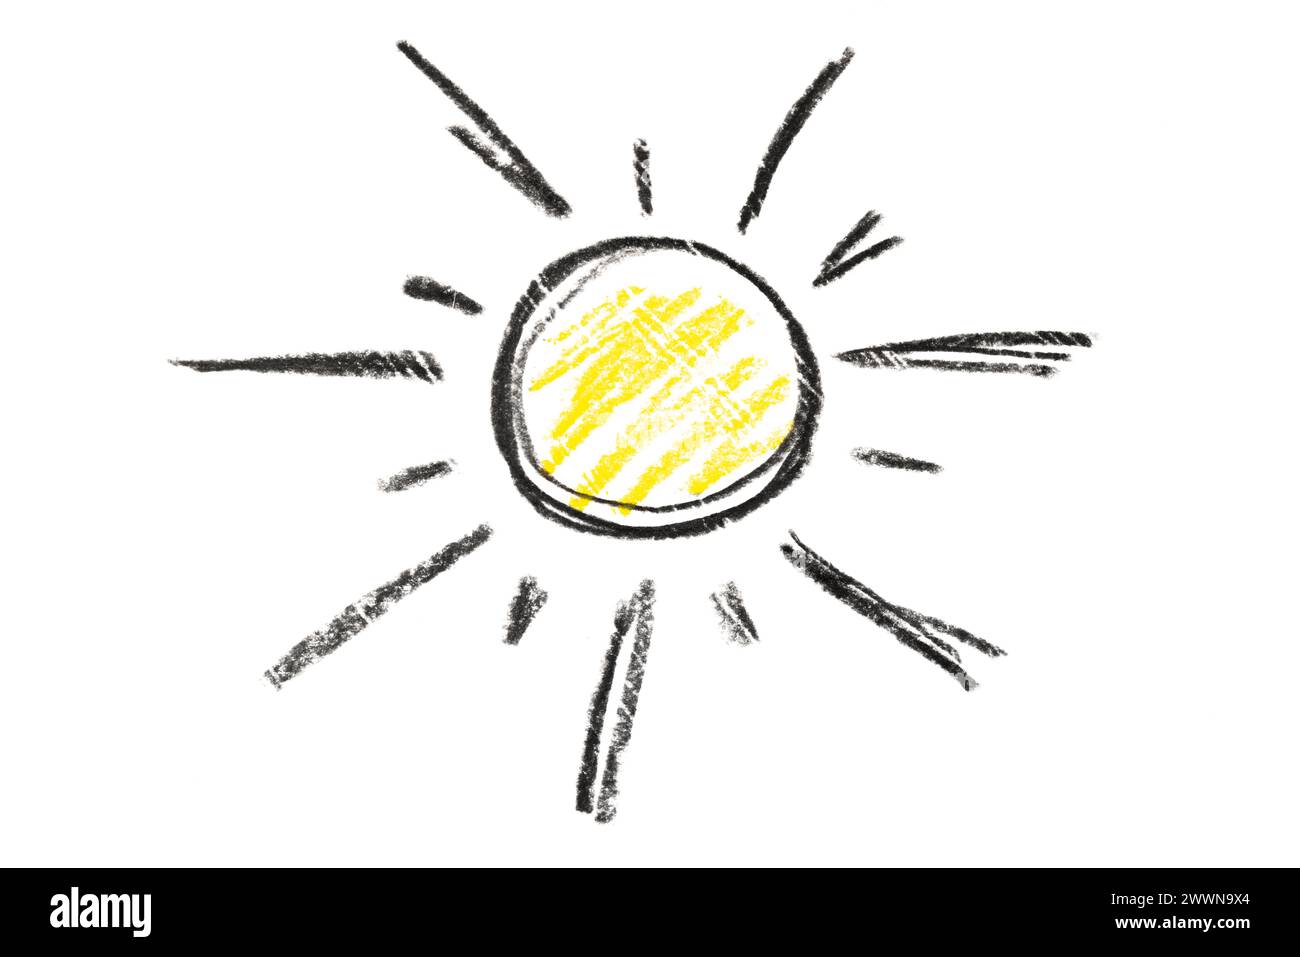 Un vivace disegno del sole, raffigurato in una matita nera e gialla isolata su uno sfondo bianco. Perfetto per aggiungere un tocco di allegria a qualsiasi progetto di design. Foto Stock